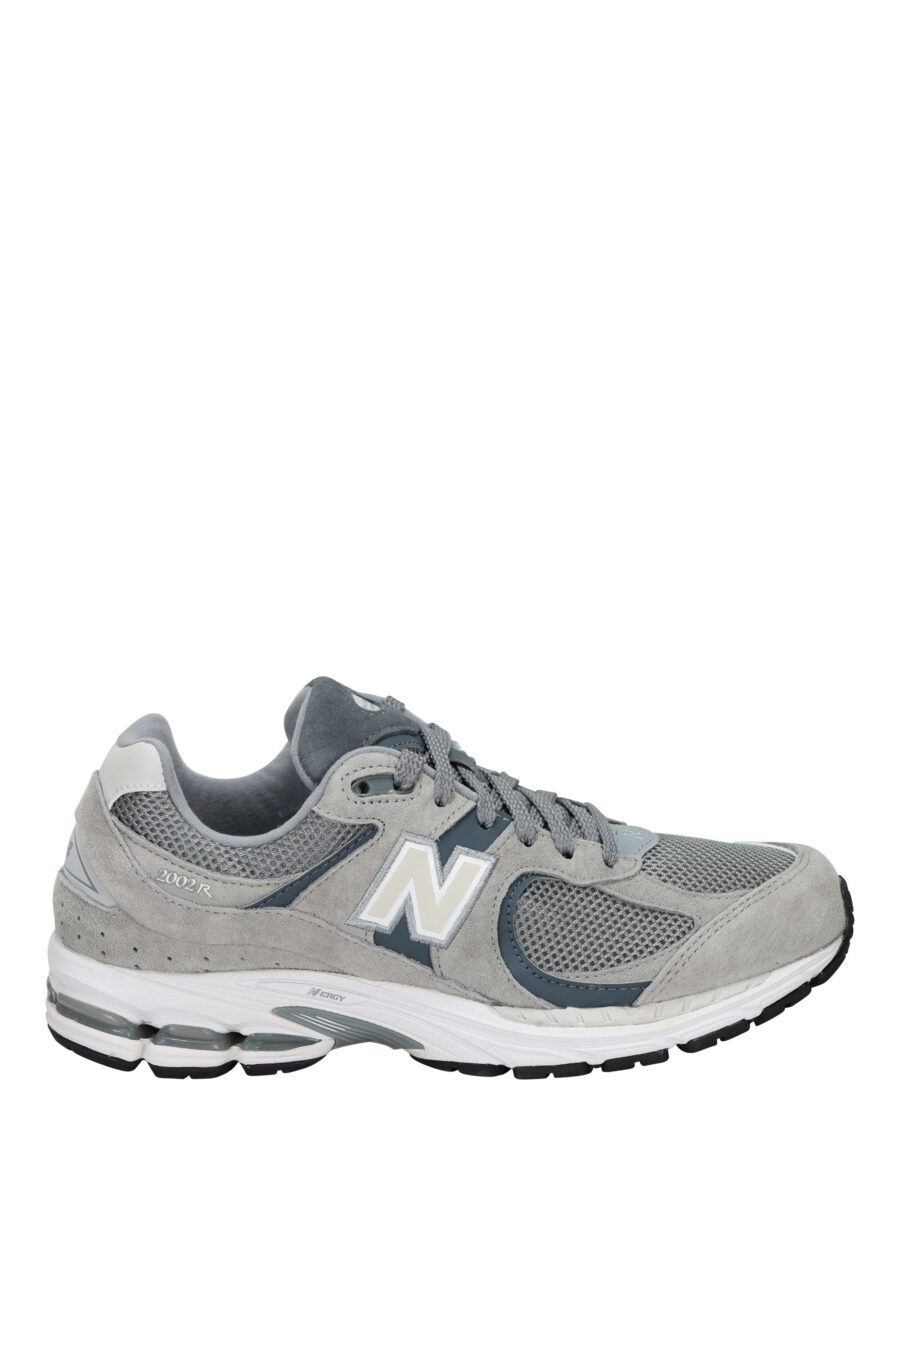 Zapatillas grises mix con negro "2002R" y logo "N" blanco - 196432152469